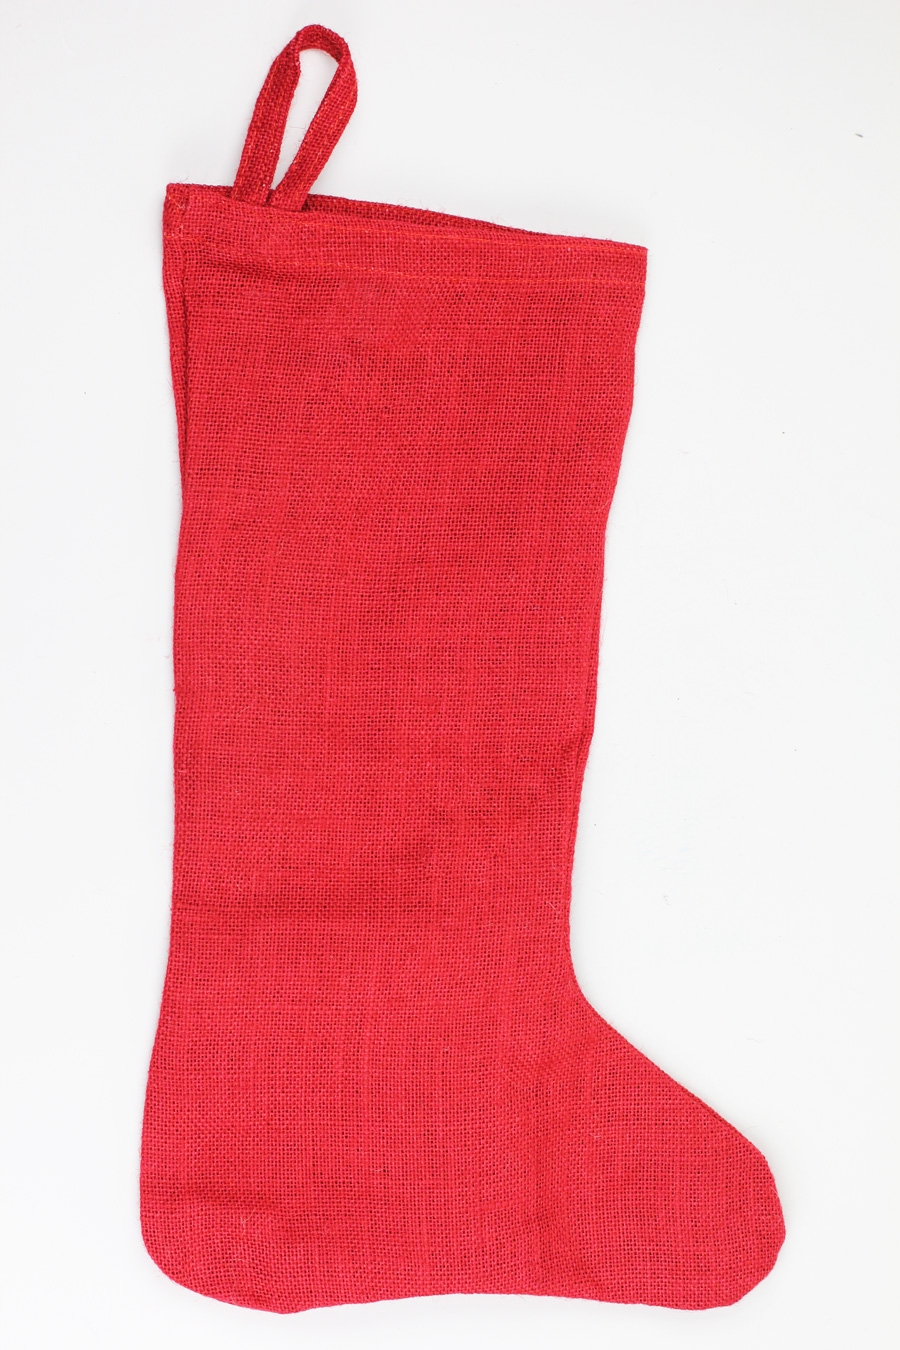 11" x 19" Red Burlap Stocking